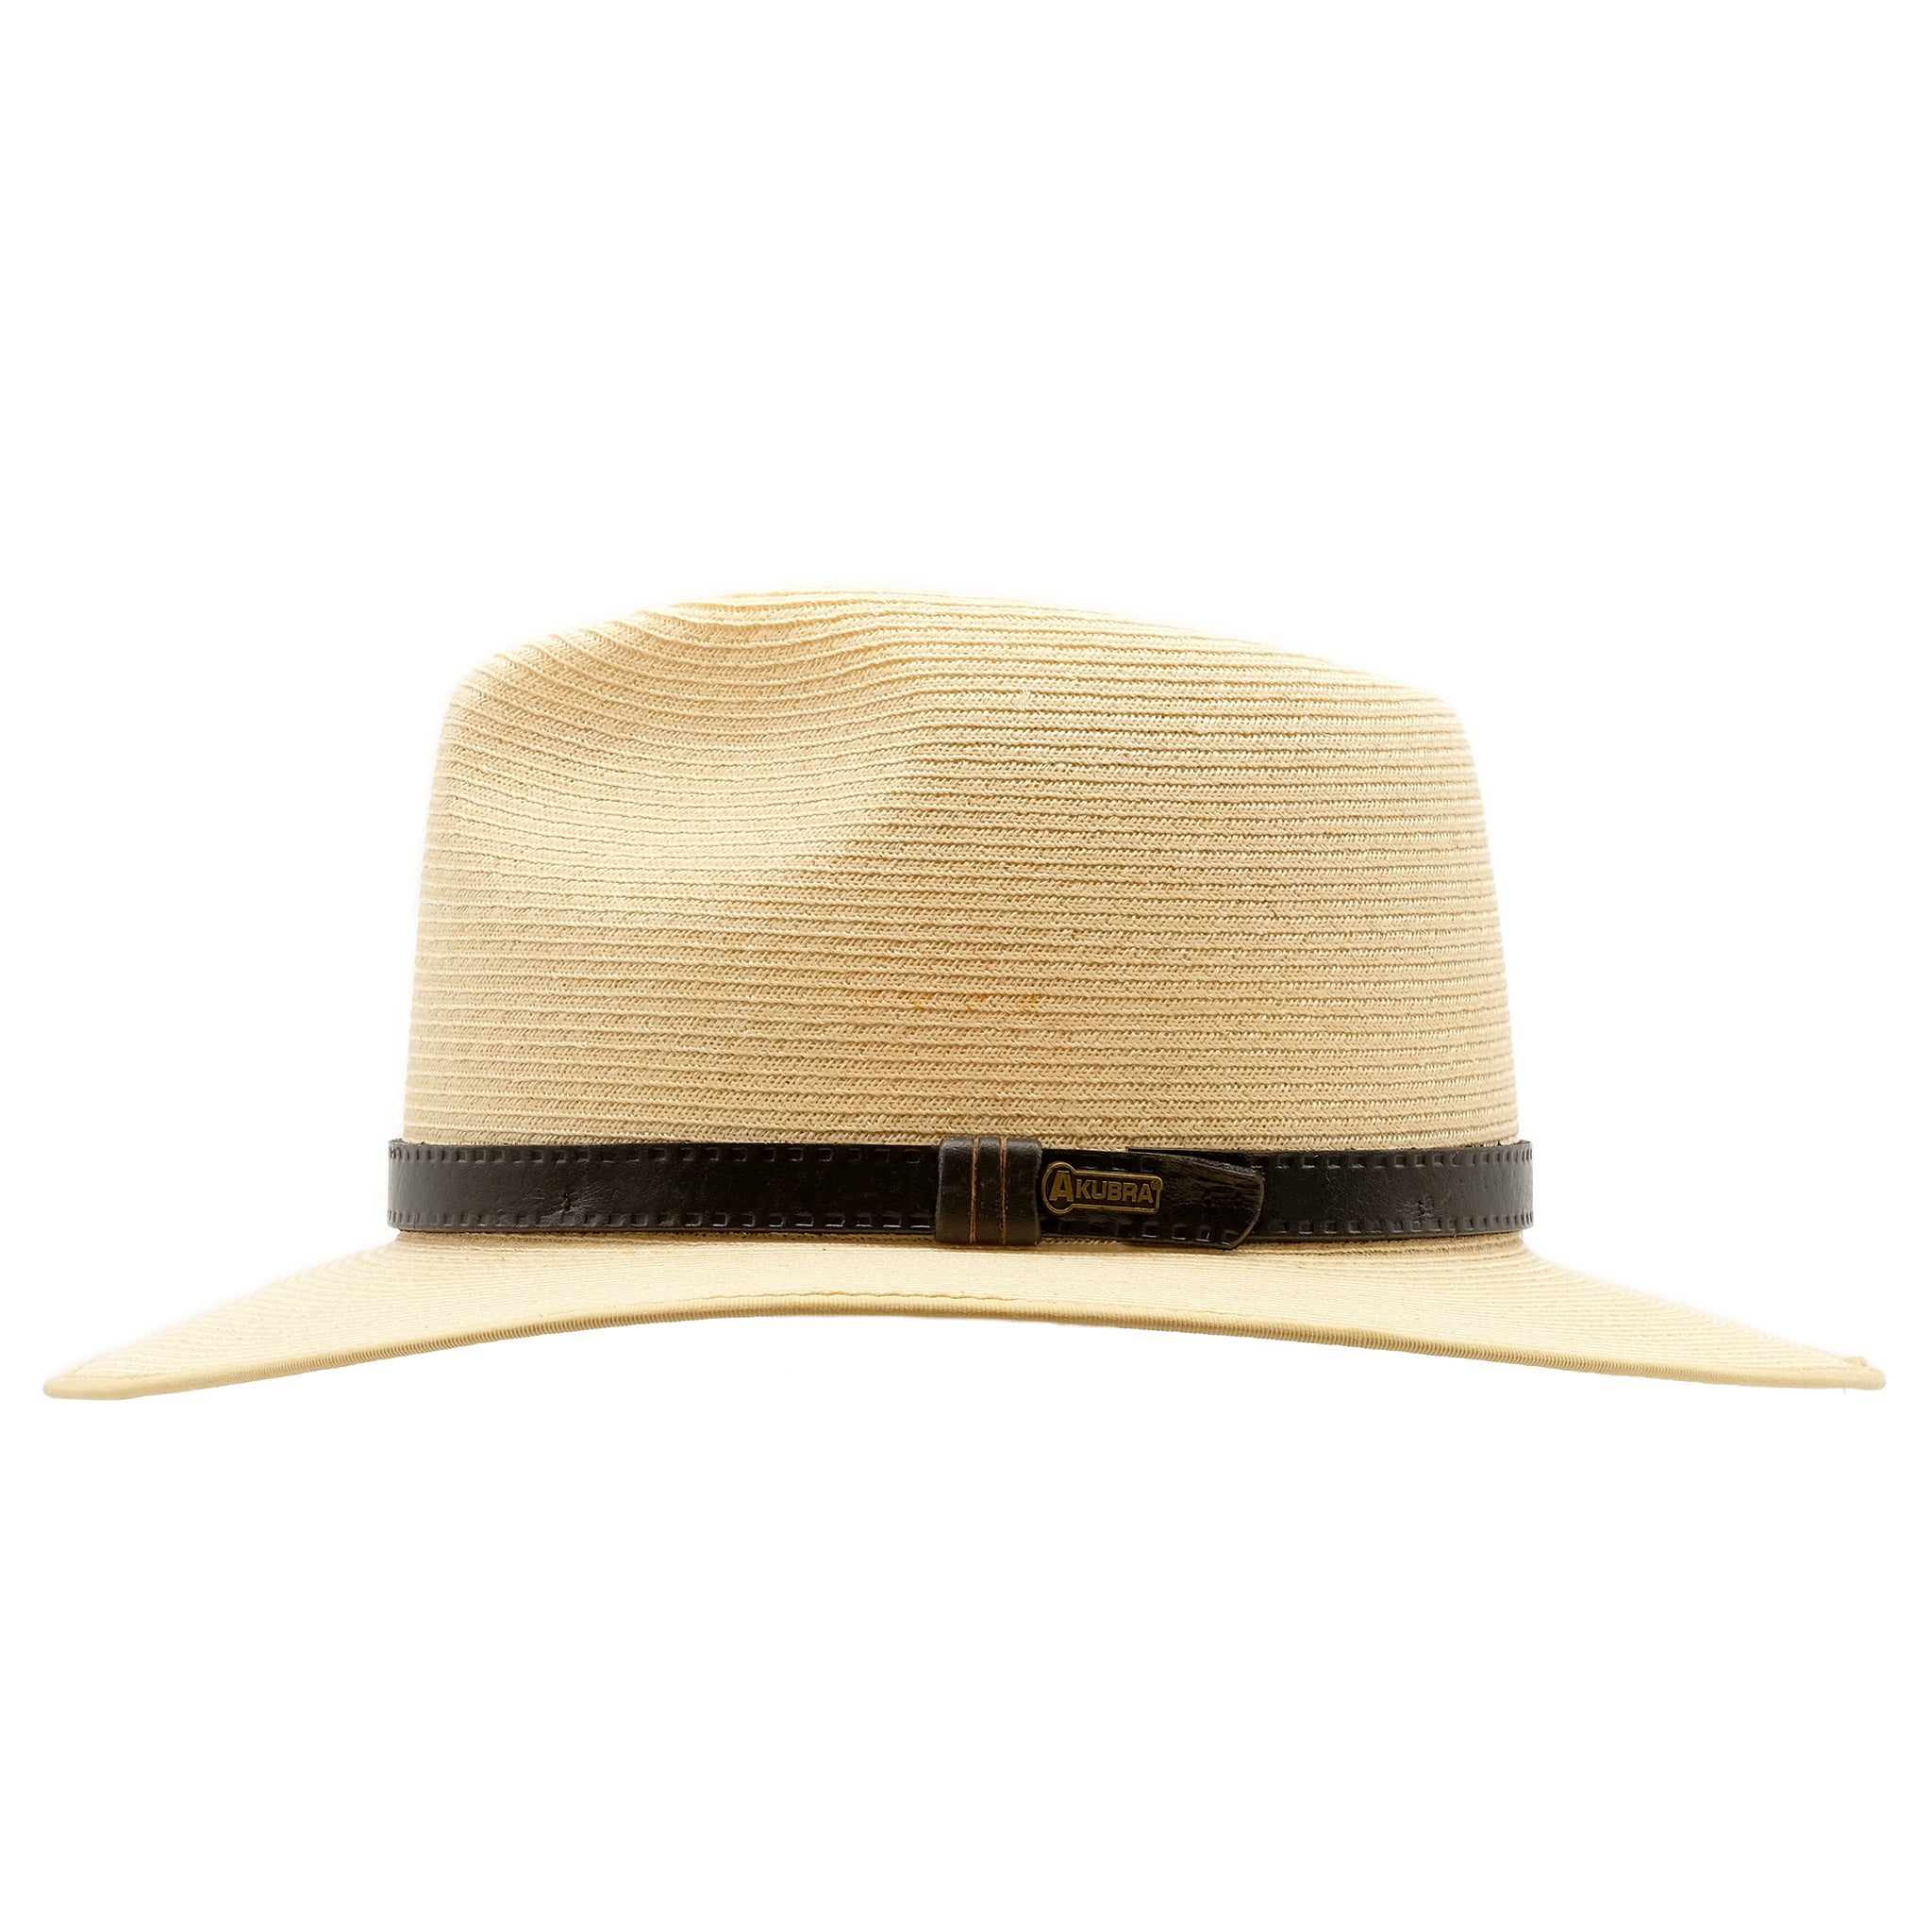 Side view of Akubra Balmoral hat